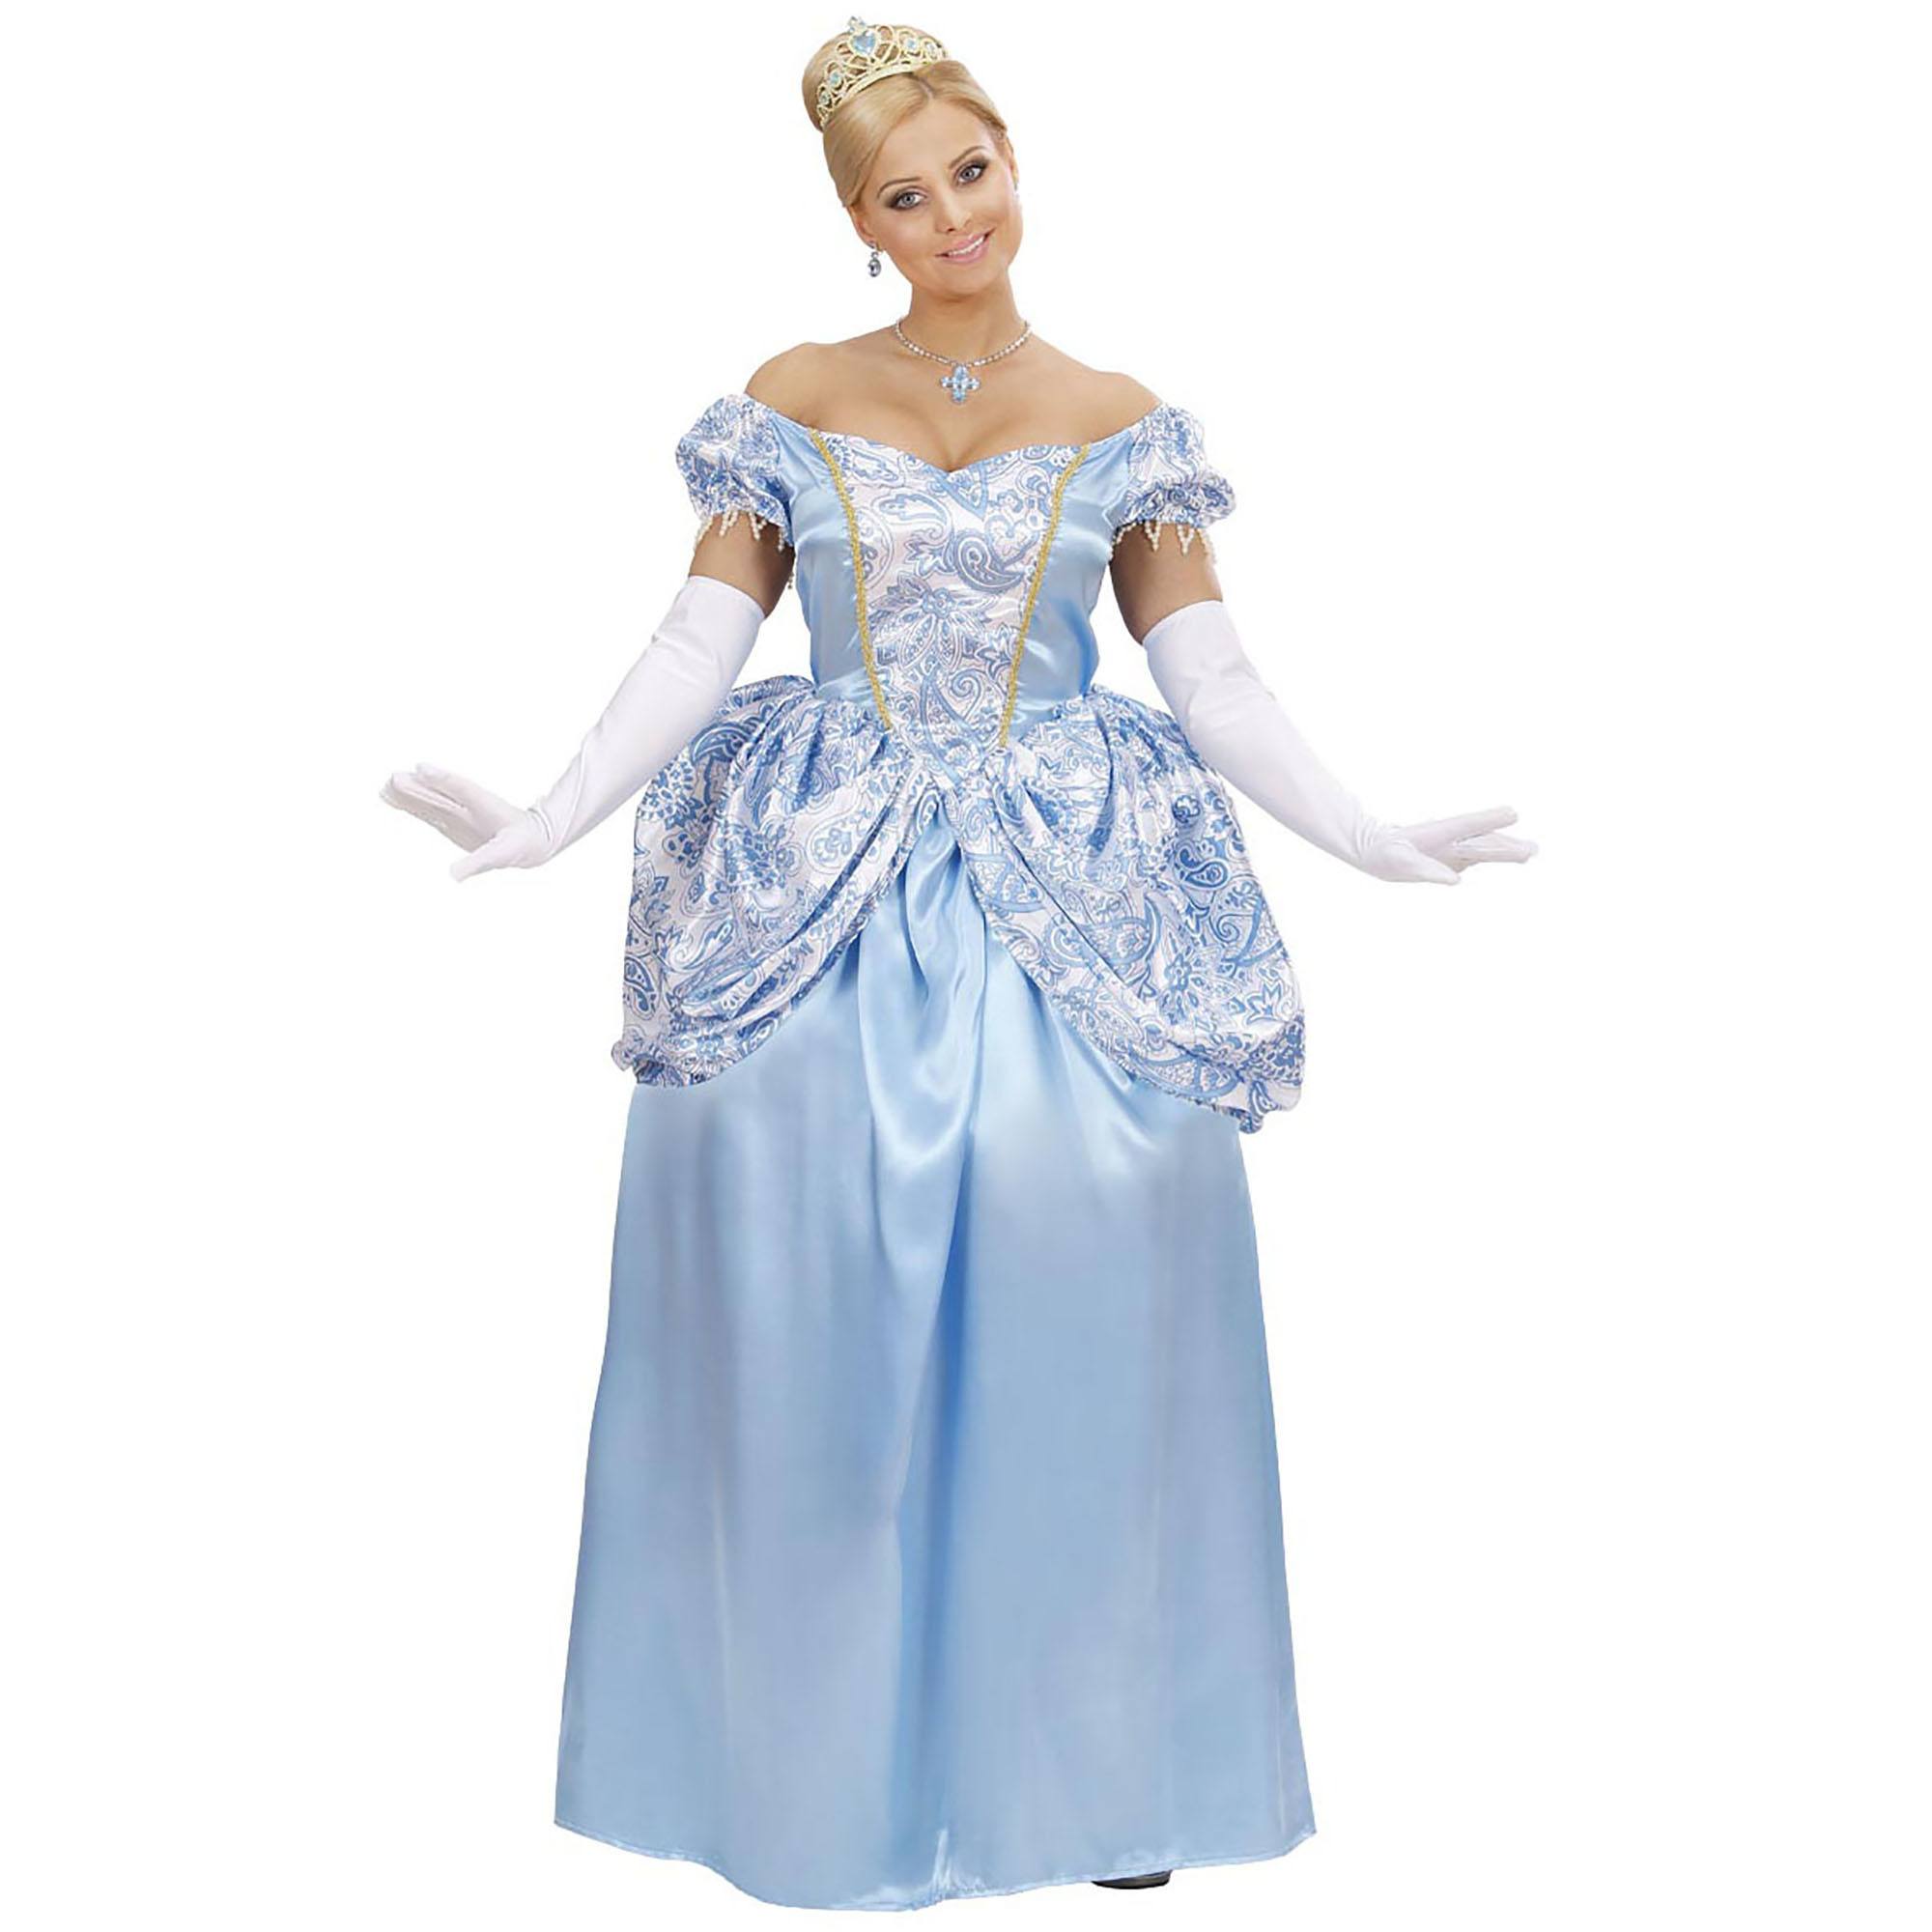 satijnen prinsessenjurk  royal blauwe prinsessen jurk